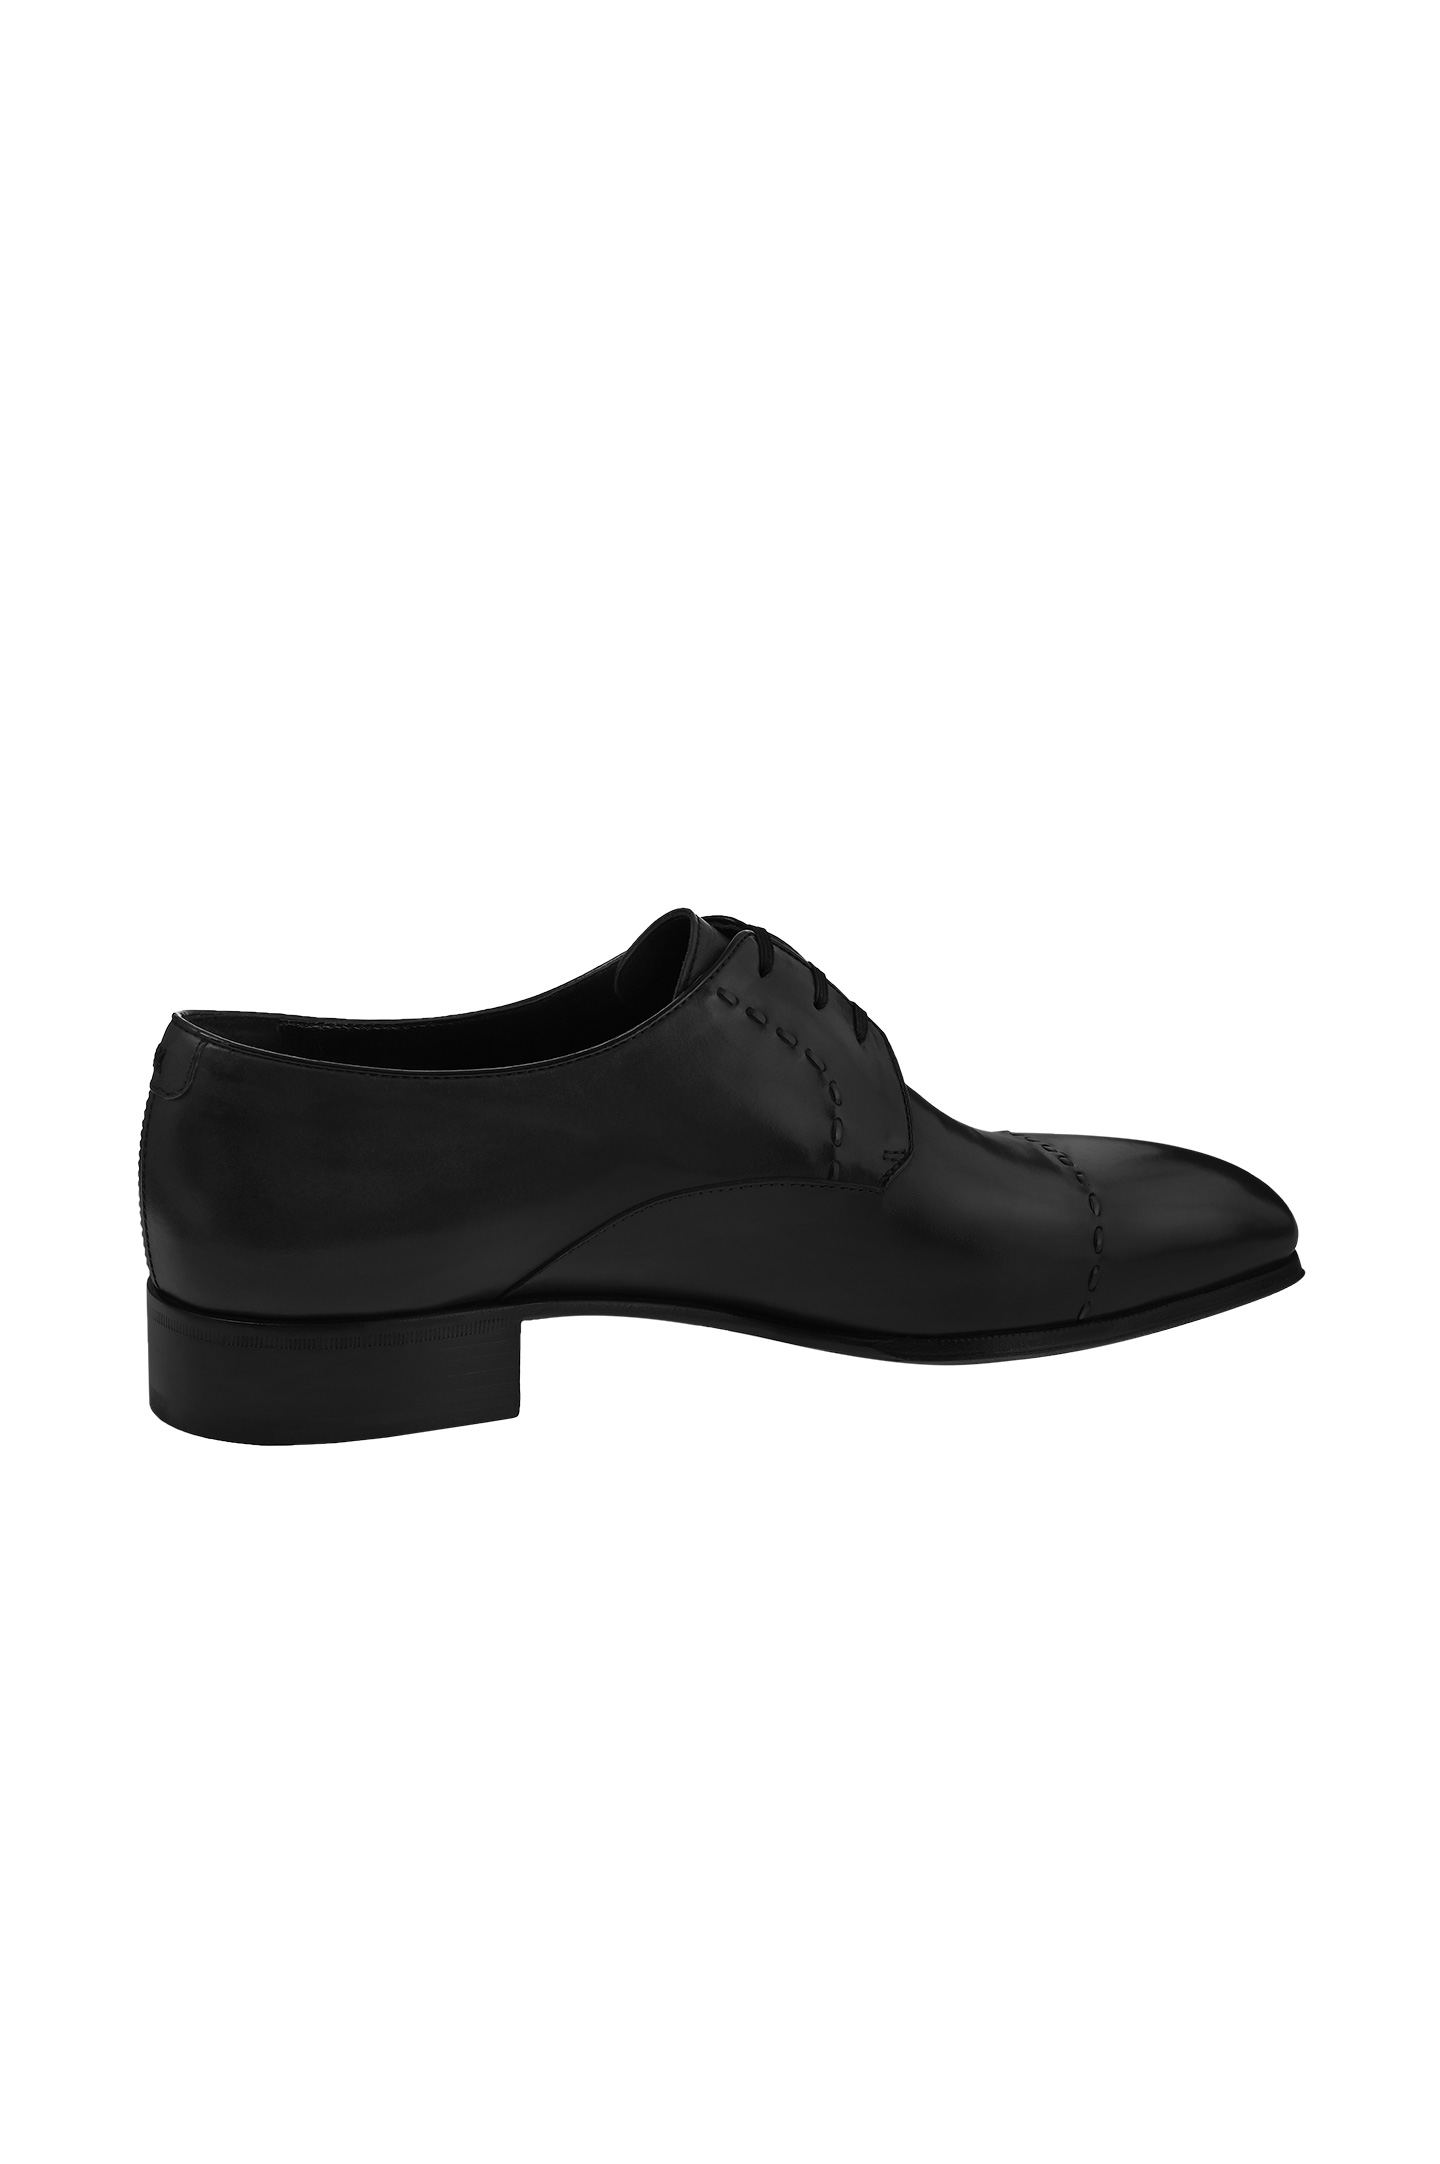 Туфли ARTIOLI 06S081, цвет: Темно-серый, Мужской